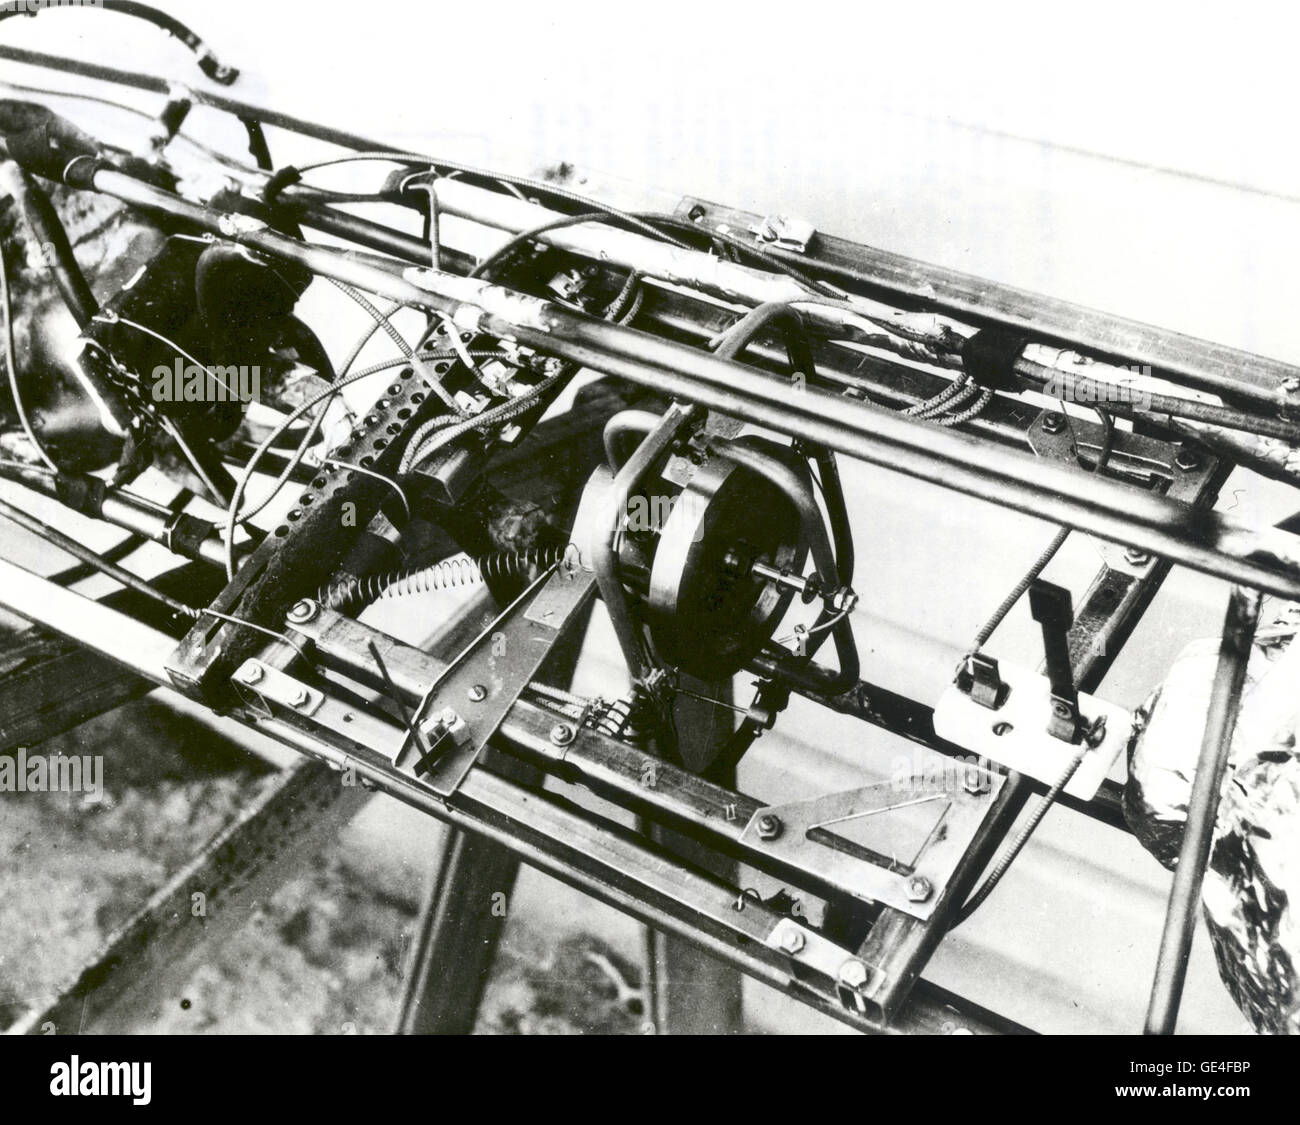 Un close-up del Dr. Robert H. Goddard giroscopio y piezas asociadas utilizadas en la estabilización del cohete probado el 19 de abril de 1932, en Nuevo México. El cohete también fue pintado para mostrar si la revolución alrededor de su eje se produjo durante el vuelo. Dr. Goddard ha sido reconocido como el padre de la Americana de los cohetes y como uno de los pioneros en la exploración del espacio teórico. Robert Hutchings Goddard, nacido en Worcester, Massachusetts, el 5 de octubre de 1882, fue científico teórico como práctico ingeniero. Su sueño era la conquista de la atmósfera superior y, en última instancia, mediante el uso de espacio Foto de stock